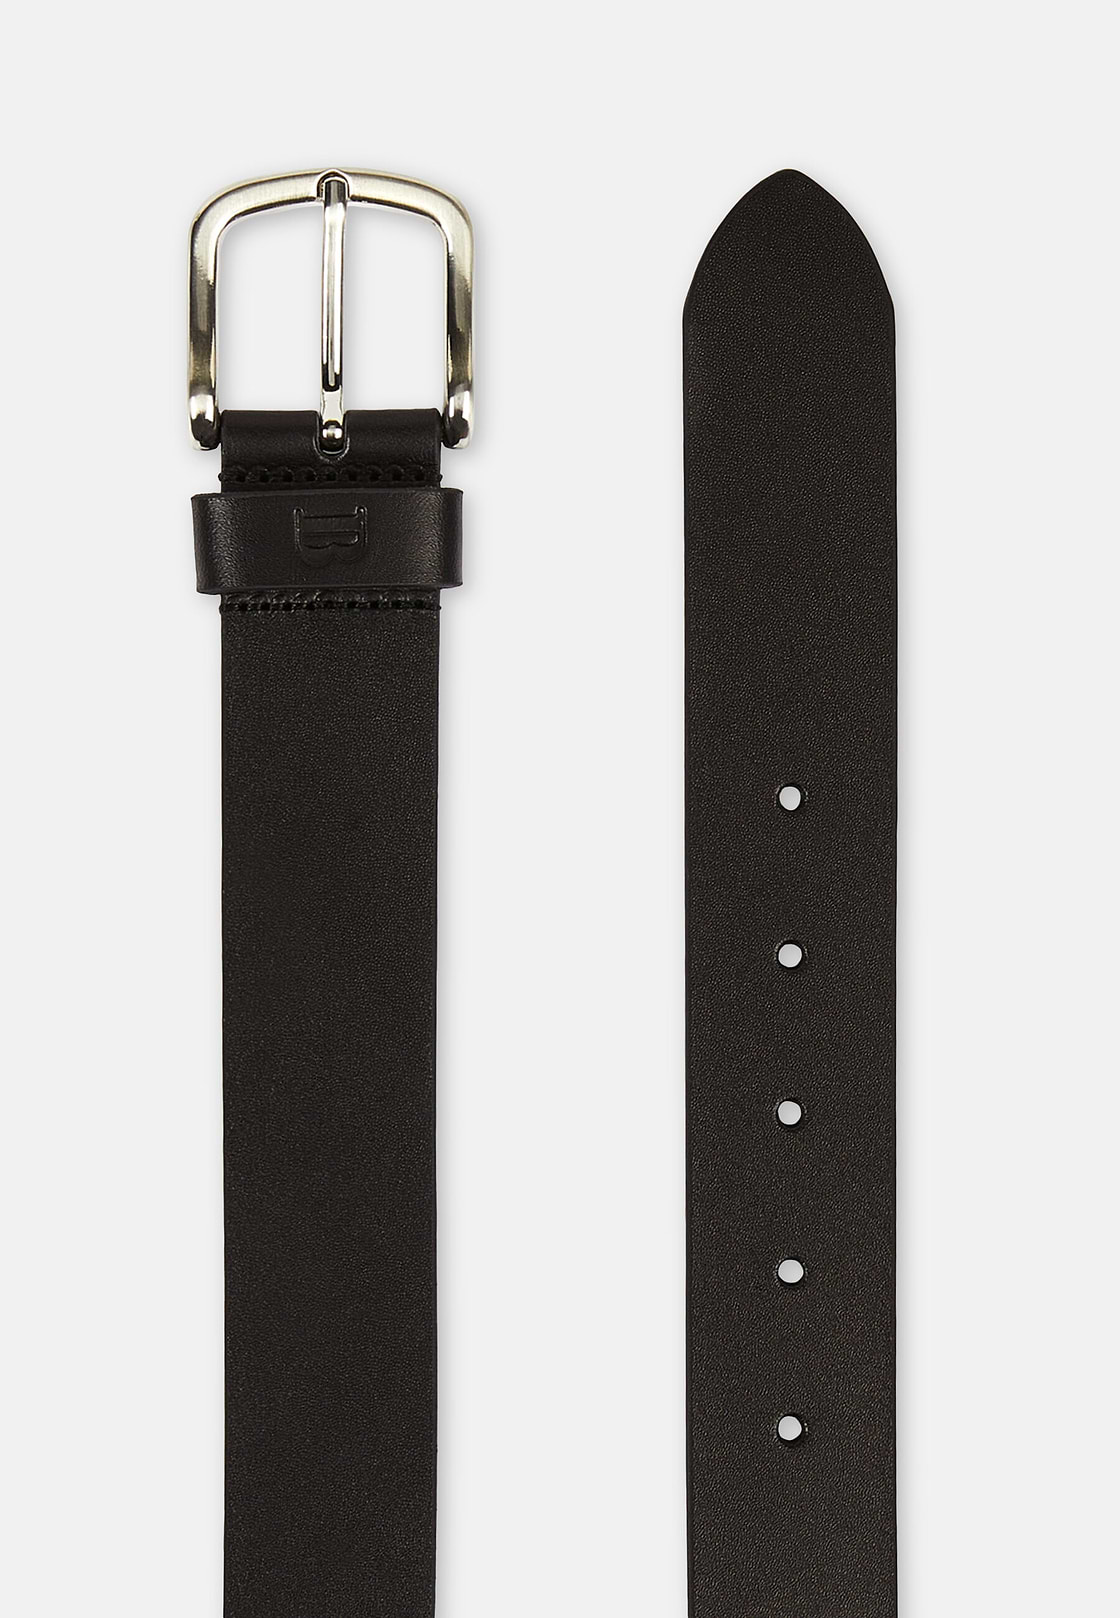 Leather Belt, Black, hi-res